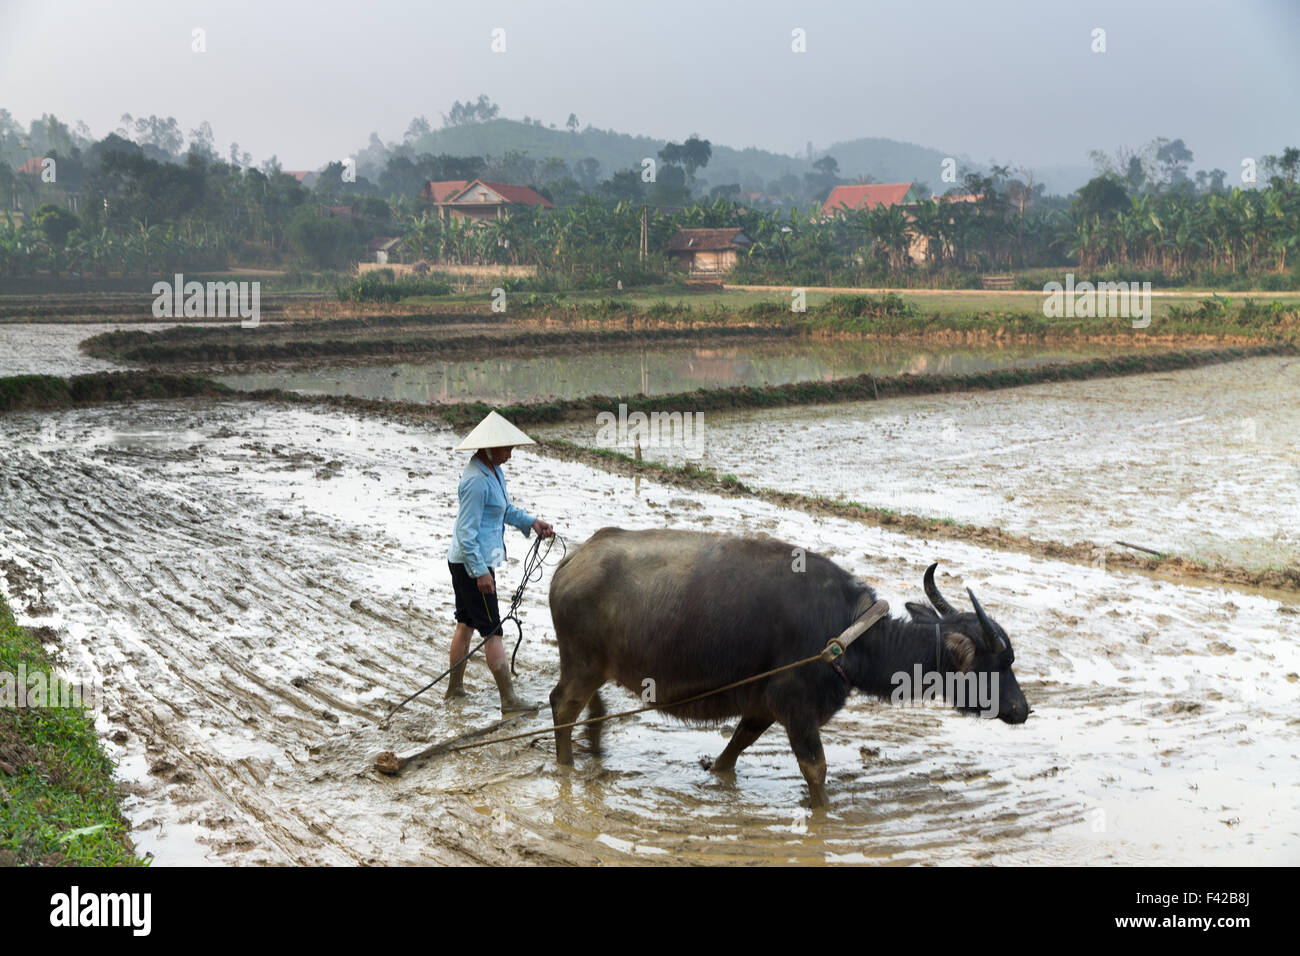 a-woman-ploughing-a-rice-paddy-nr-phong-nha-qung-bnh-province-vietnam-F42B8J.jpg